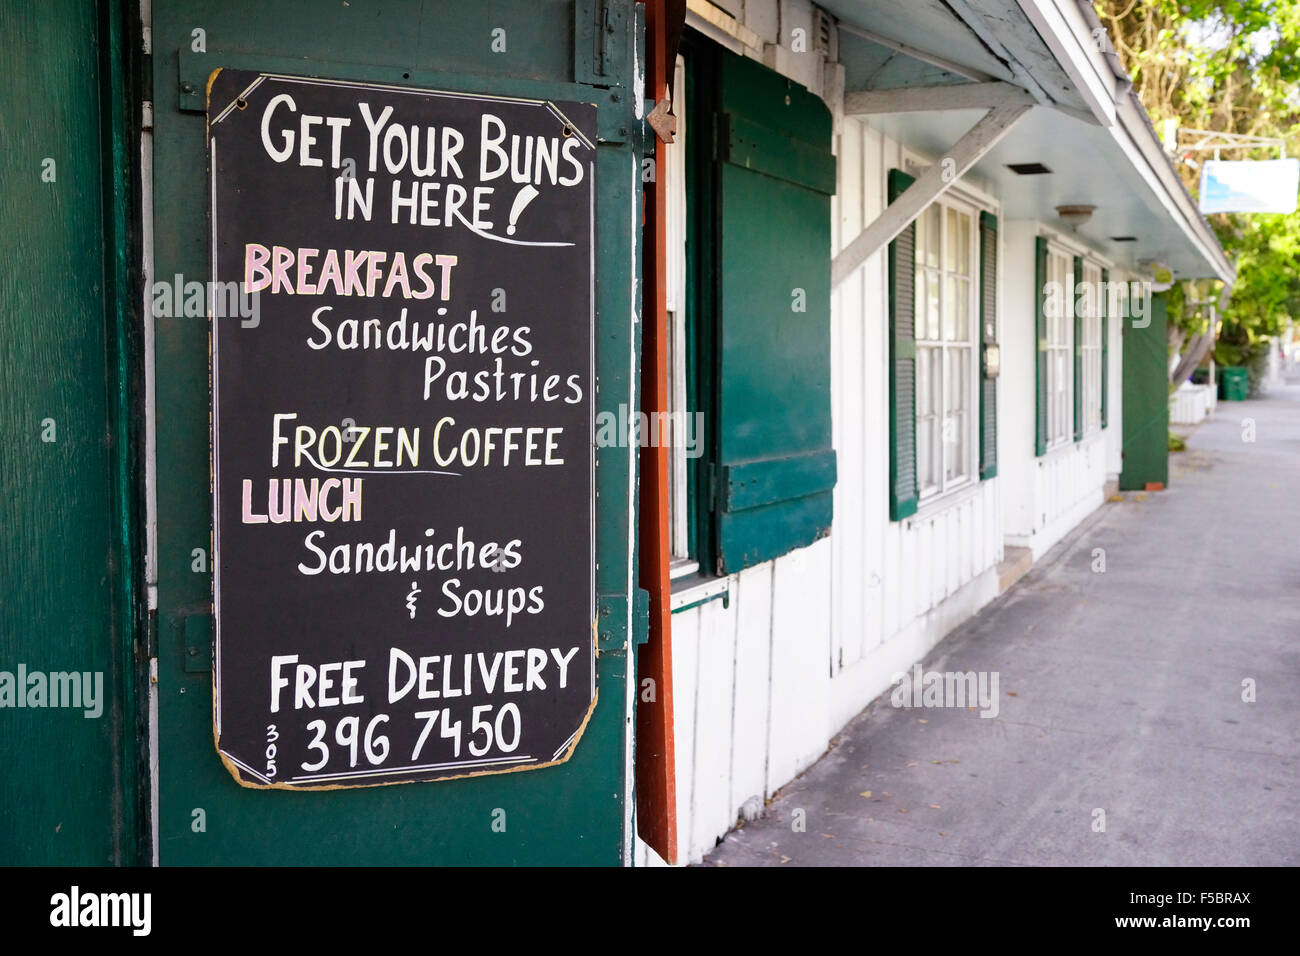 Old Town Bakery Key West, FL USA - an der Ecke von Eaton und Grinnell Straßen.  Holen Sie sich Ihre Brötchen hier!  Schild am Eingang Stockfoto